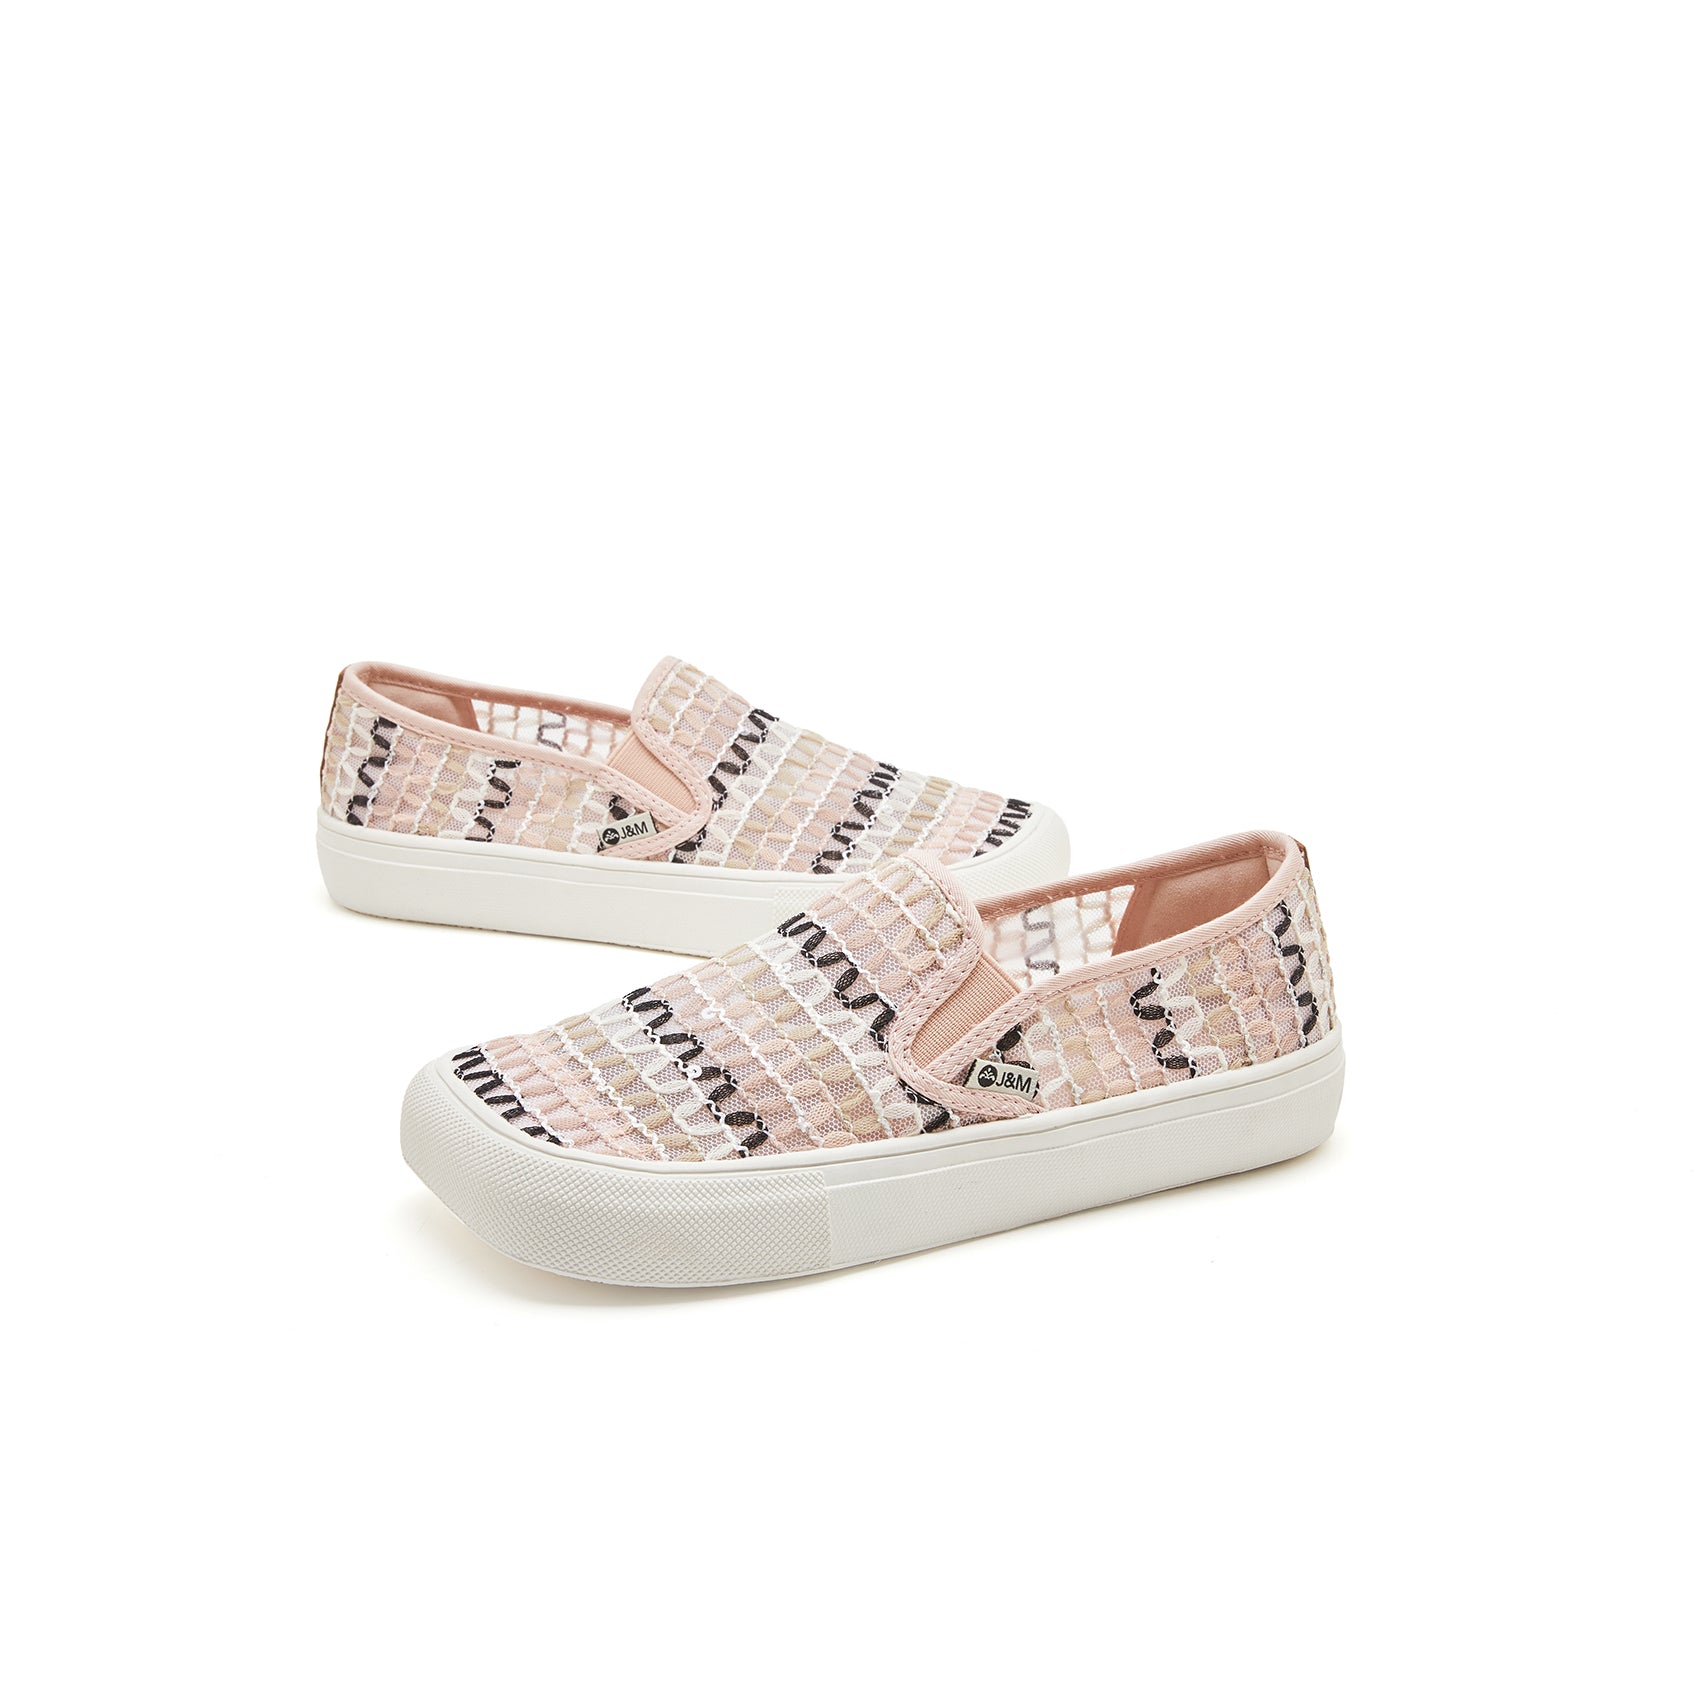 JOY&MARIO Women’s Slip-On Mesh Loafers in Pink-65275W